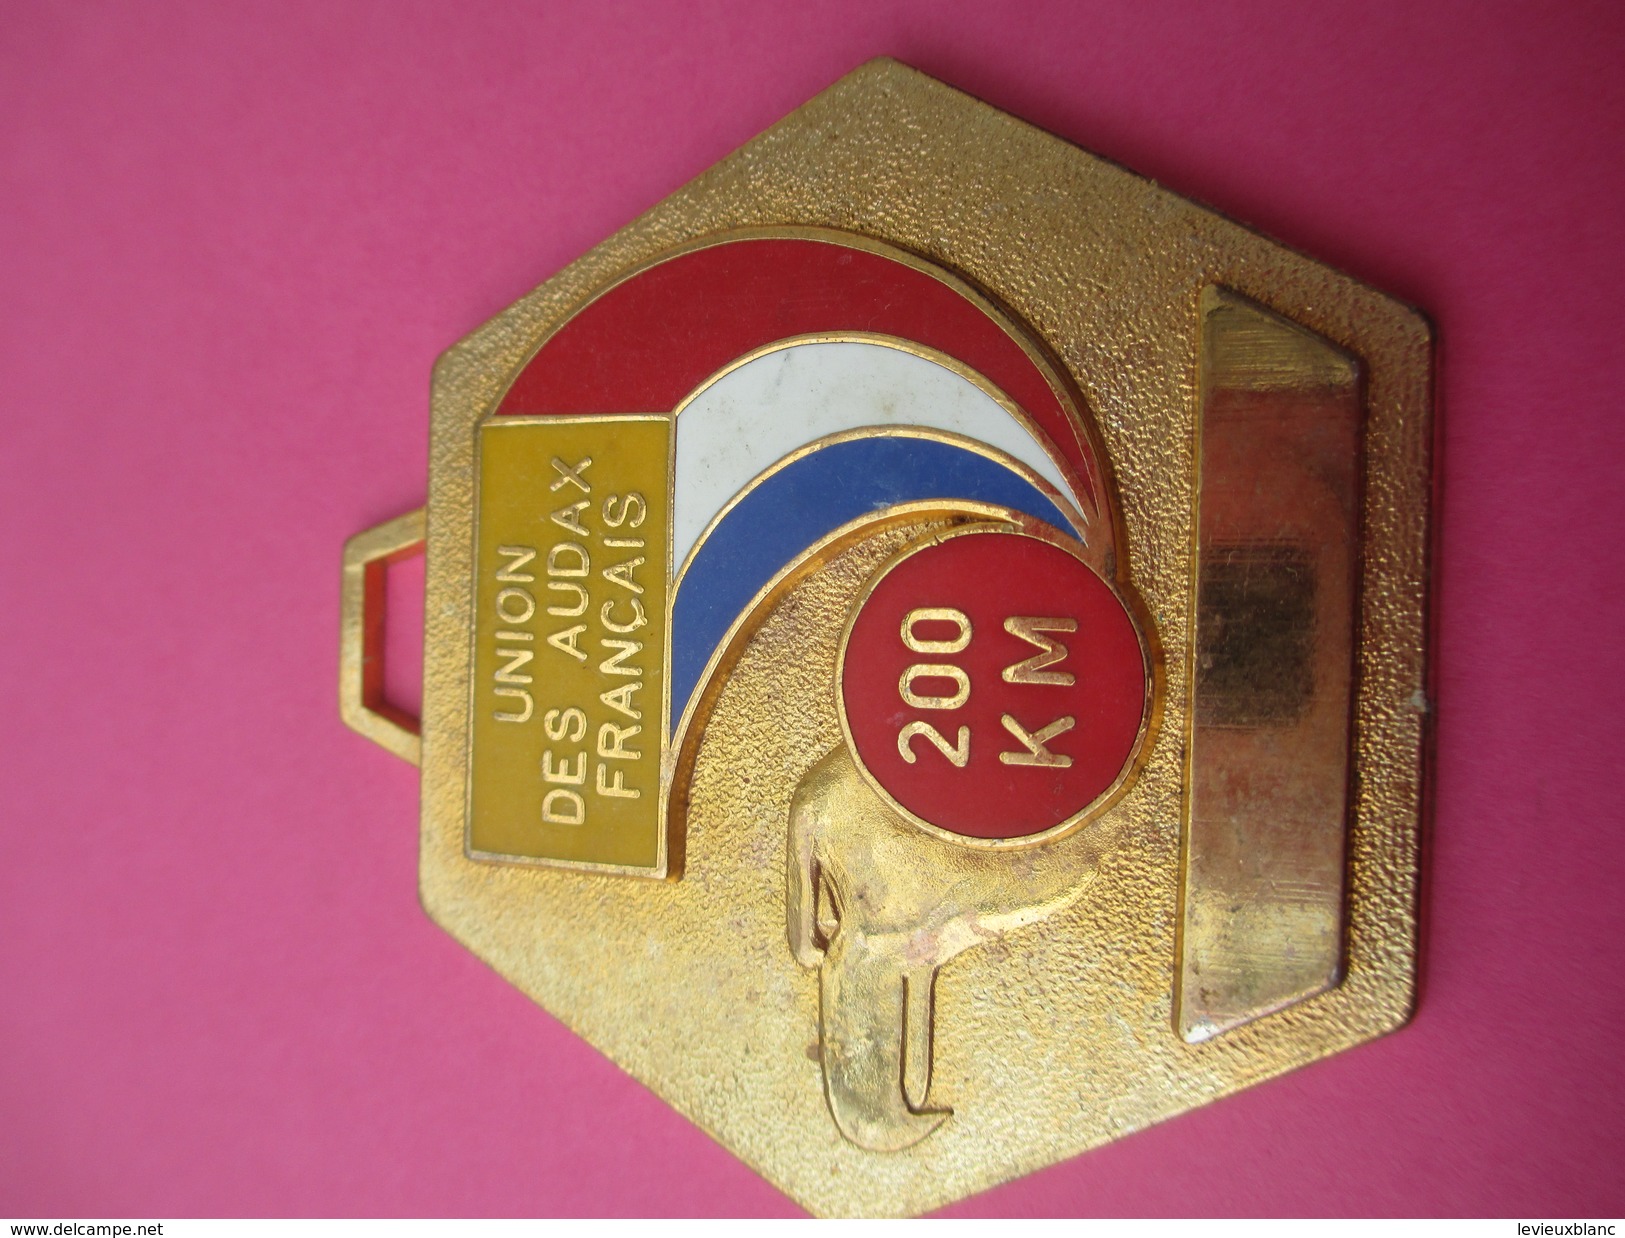 Médaille / Union Des Audax Français / Cyclisme / 200 Km/Bronze Doré/ Vers 1980               SPO175 - Radsport